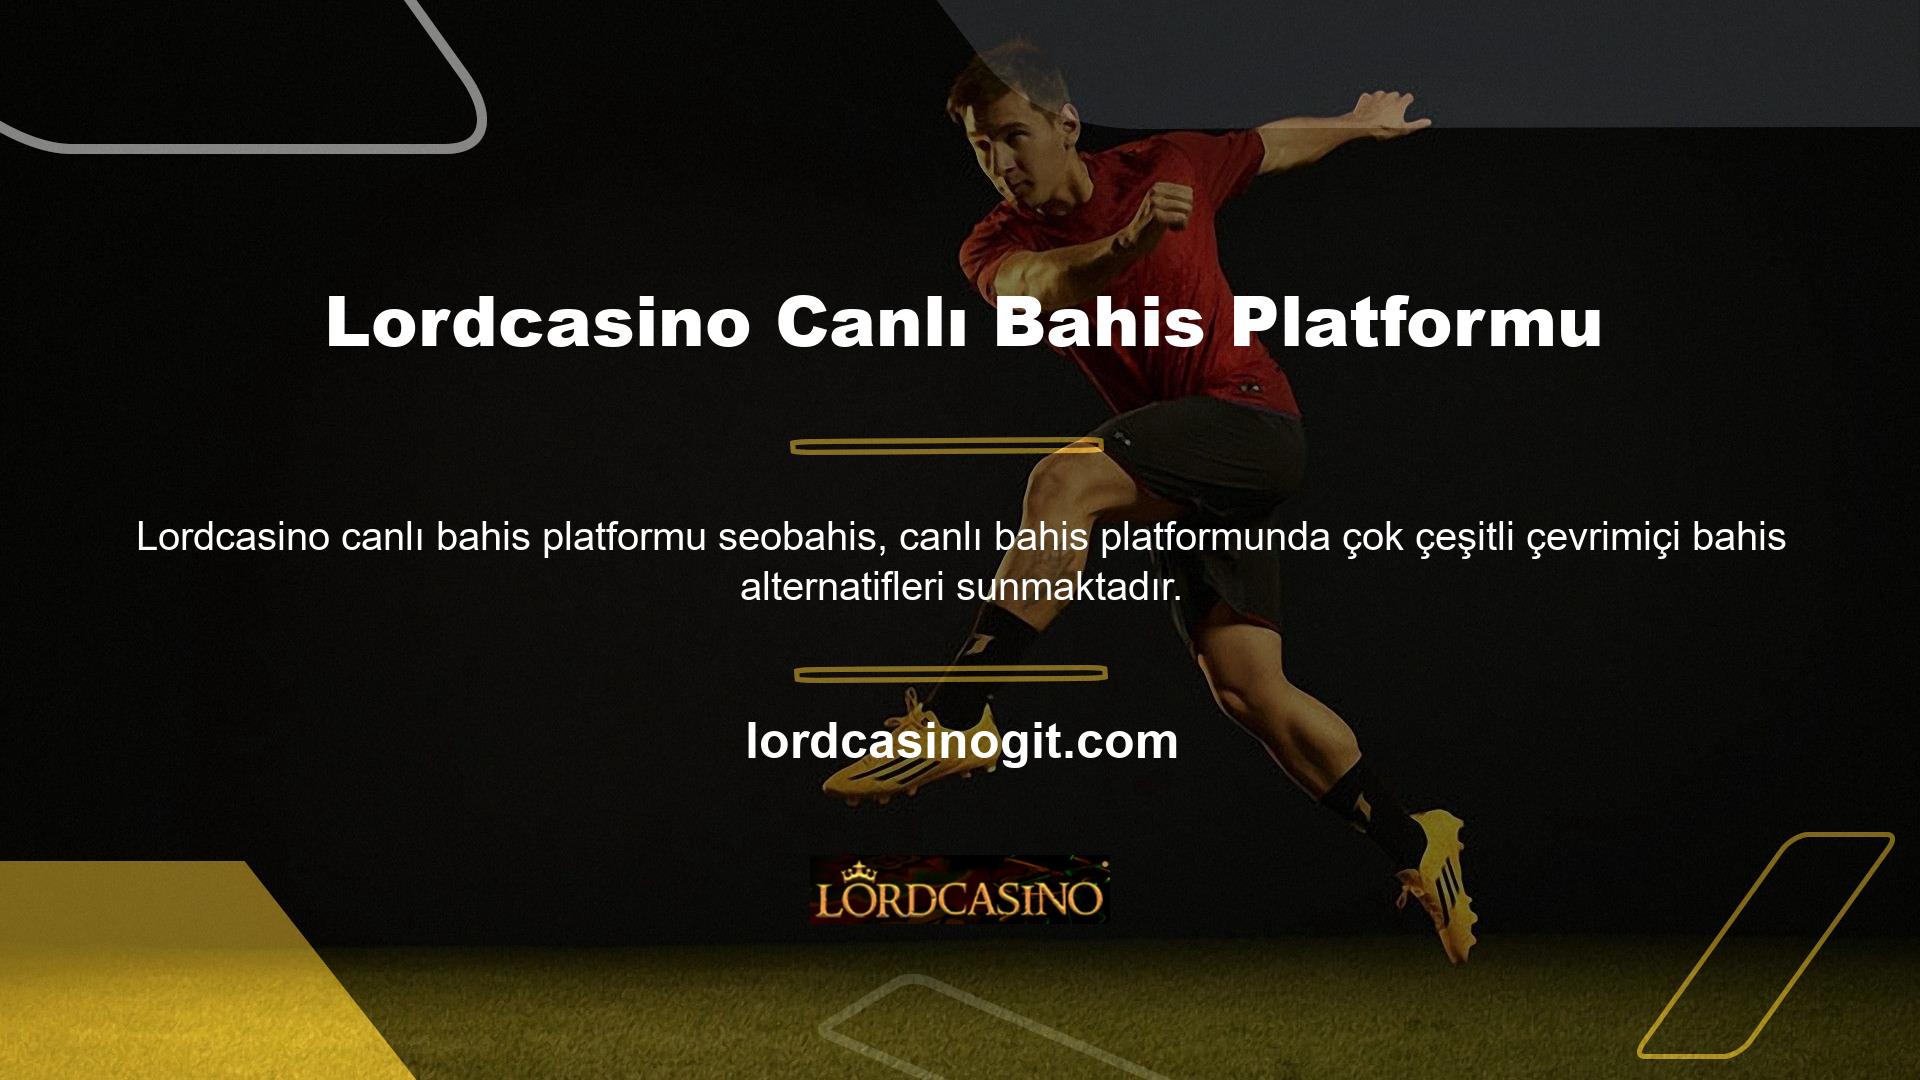 Başlangıç olarak, çok sayıda web sitesinden erişilebilen çevrimiçi bir futbol oyunudur